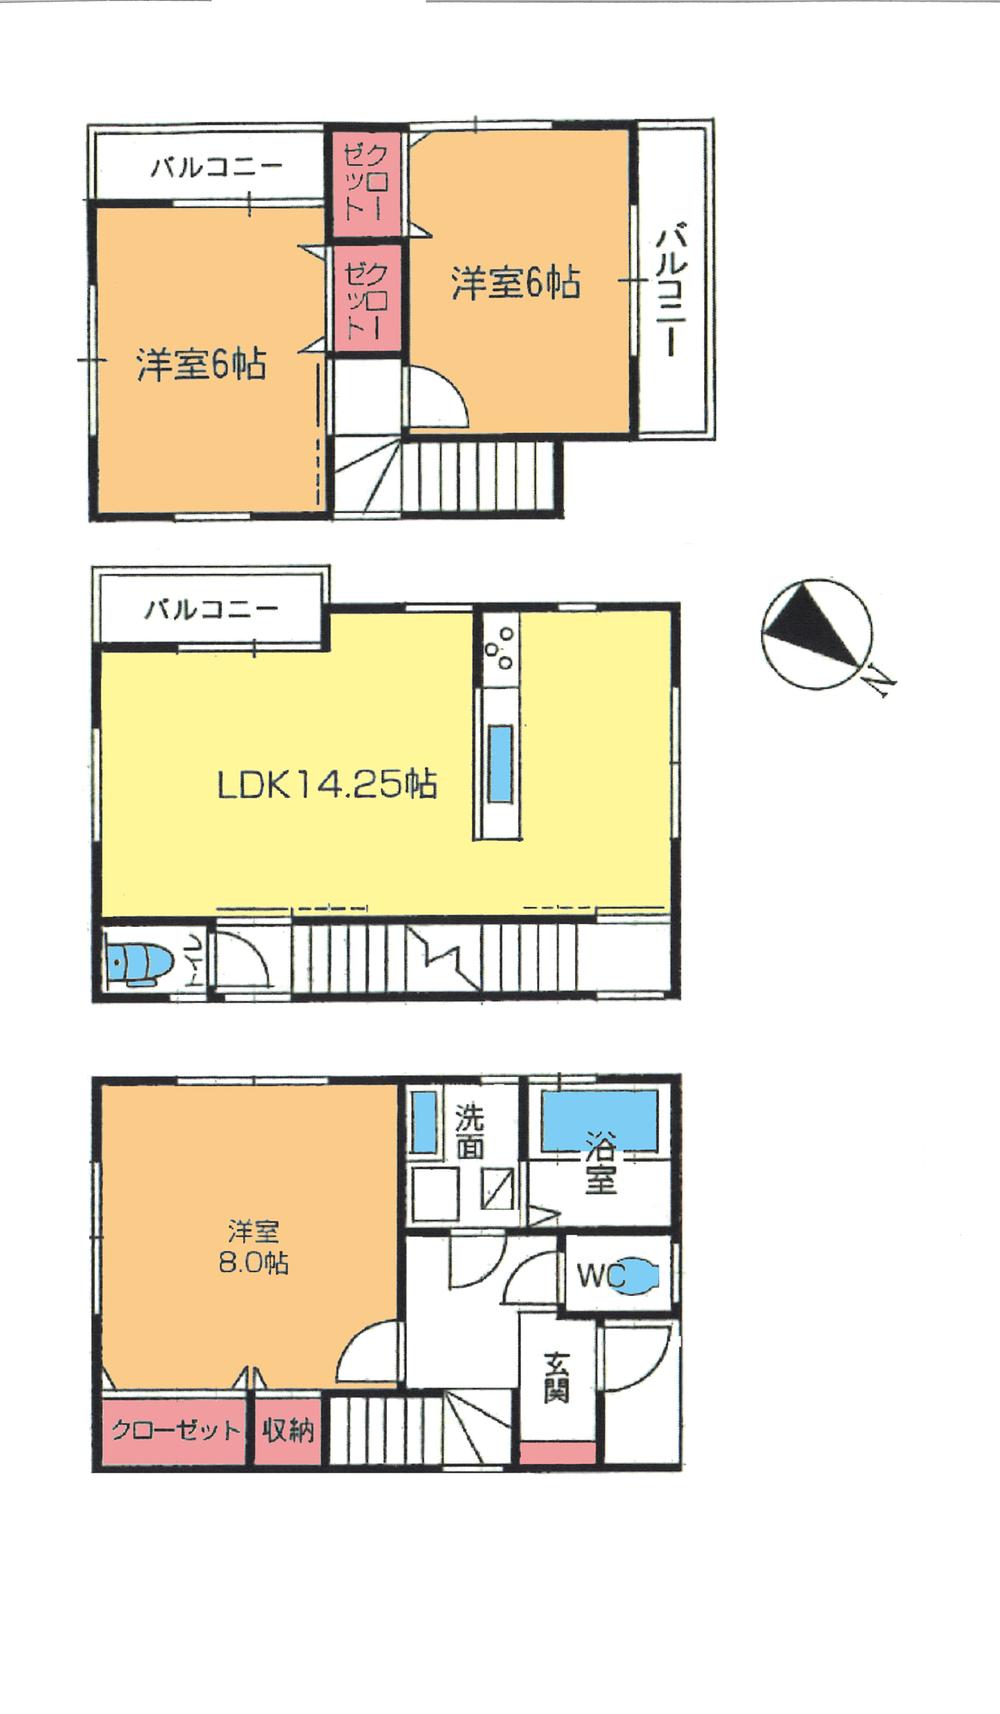 Floor plan. 24,800,000 yen, 3LDK, Land area 61.98 sq m , Building area 84.87 sq m floor plan